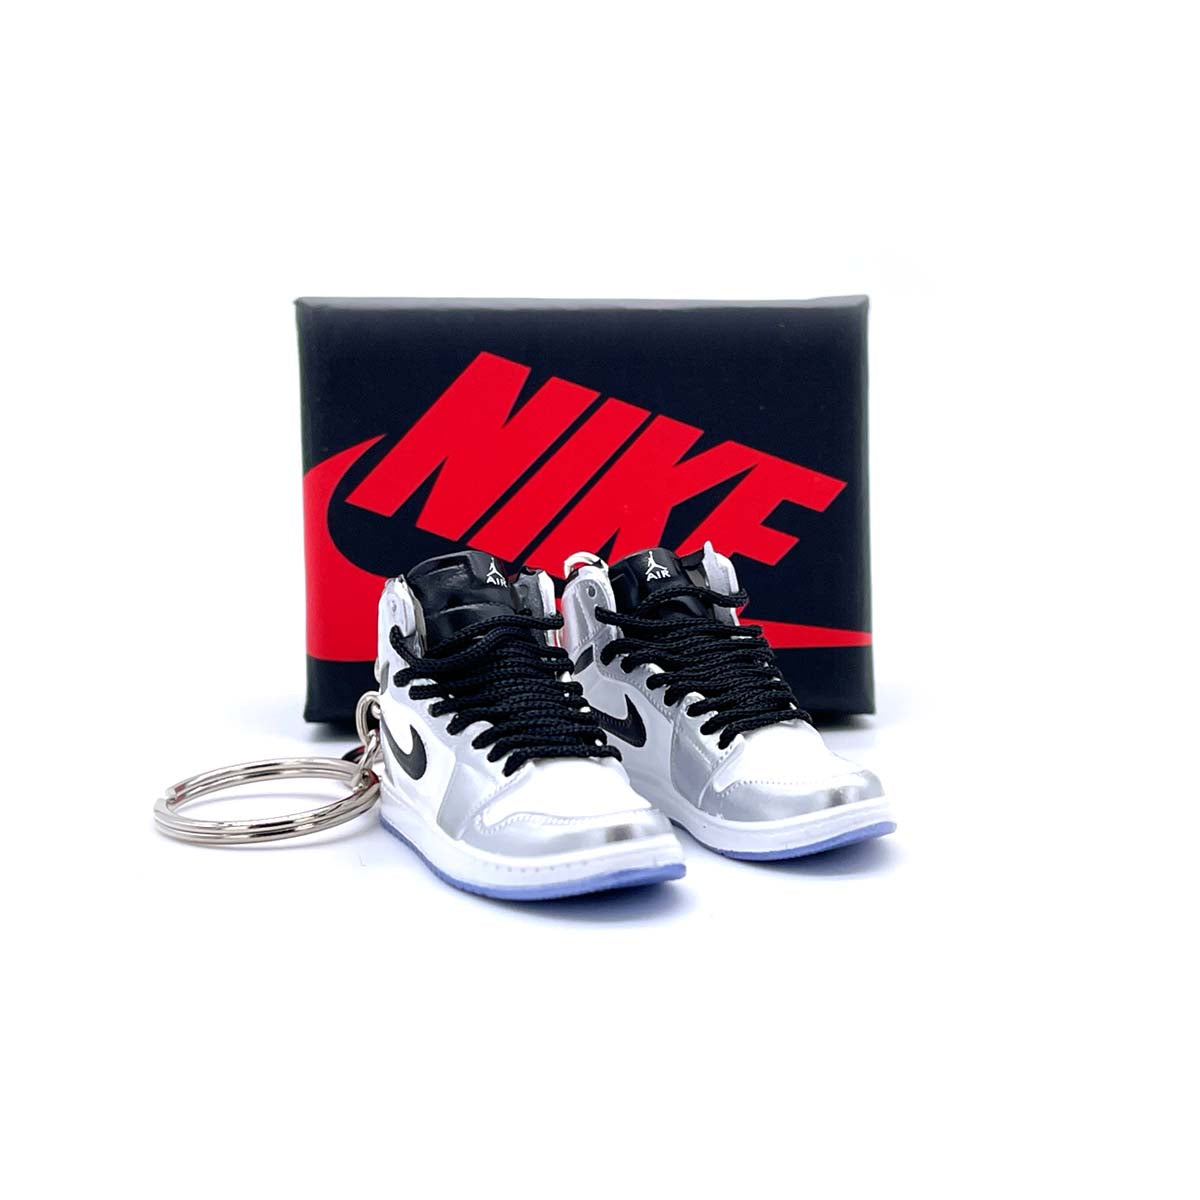 3D Sneaker Keychain- Air Jordan 1 High 'Think 16' Pair